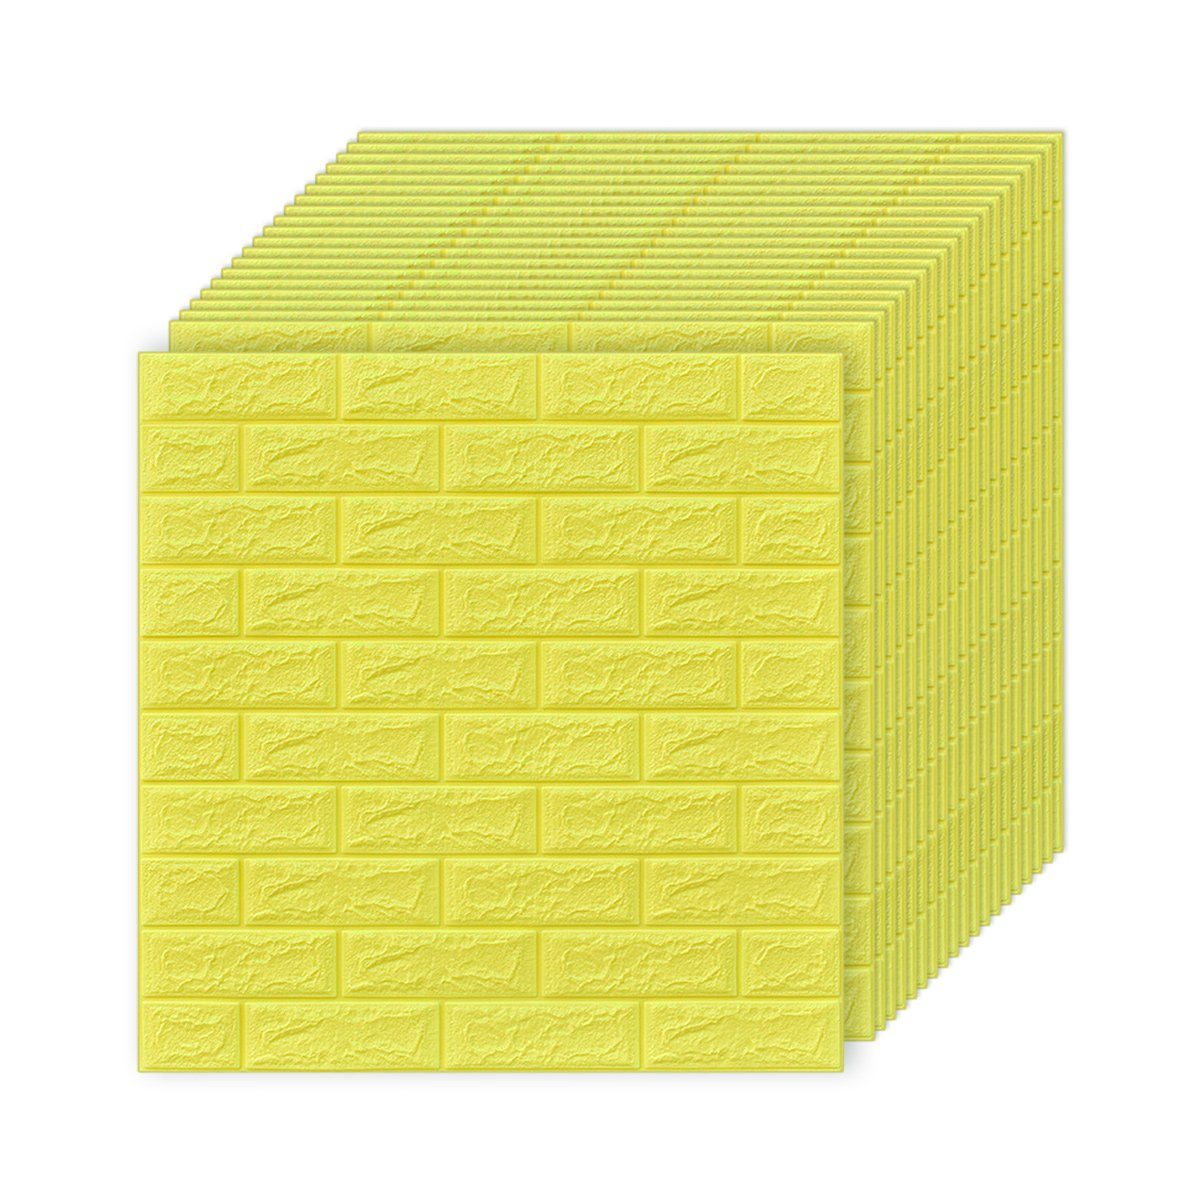 Jormftte Wandtattoo 3D Wandpaneele Selbstklebend,Wandtattoo Küche Ziegelstein für Wanddeko Gelb